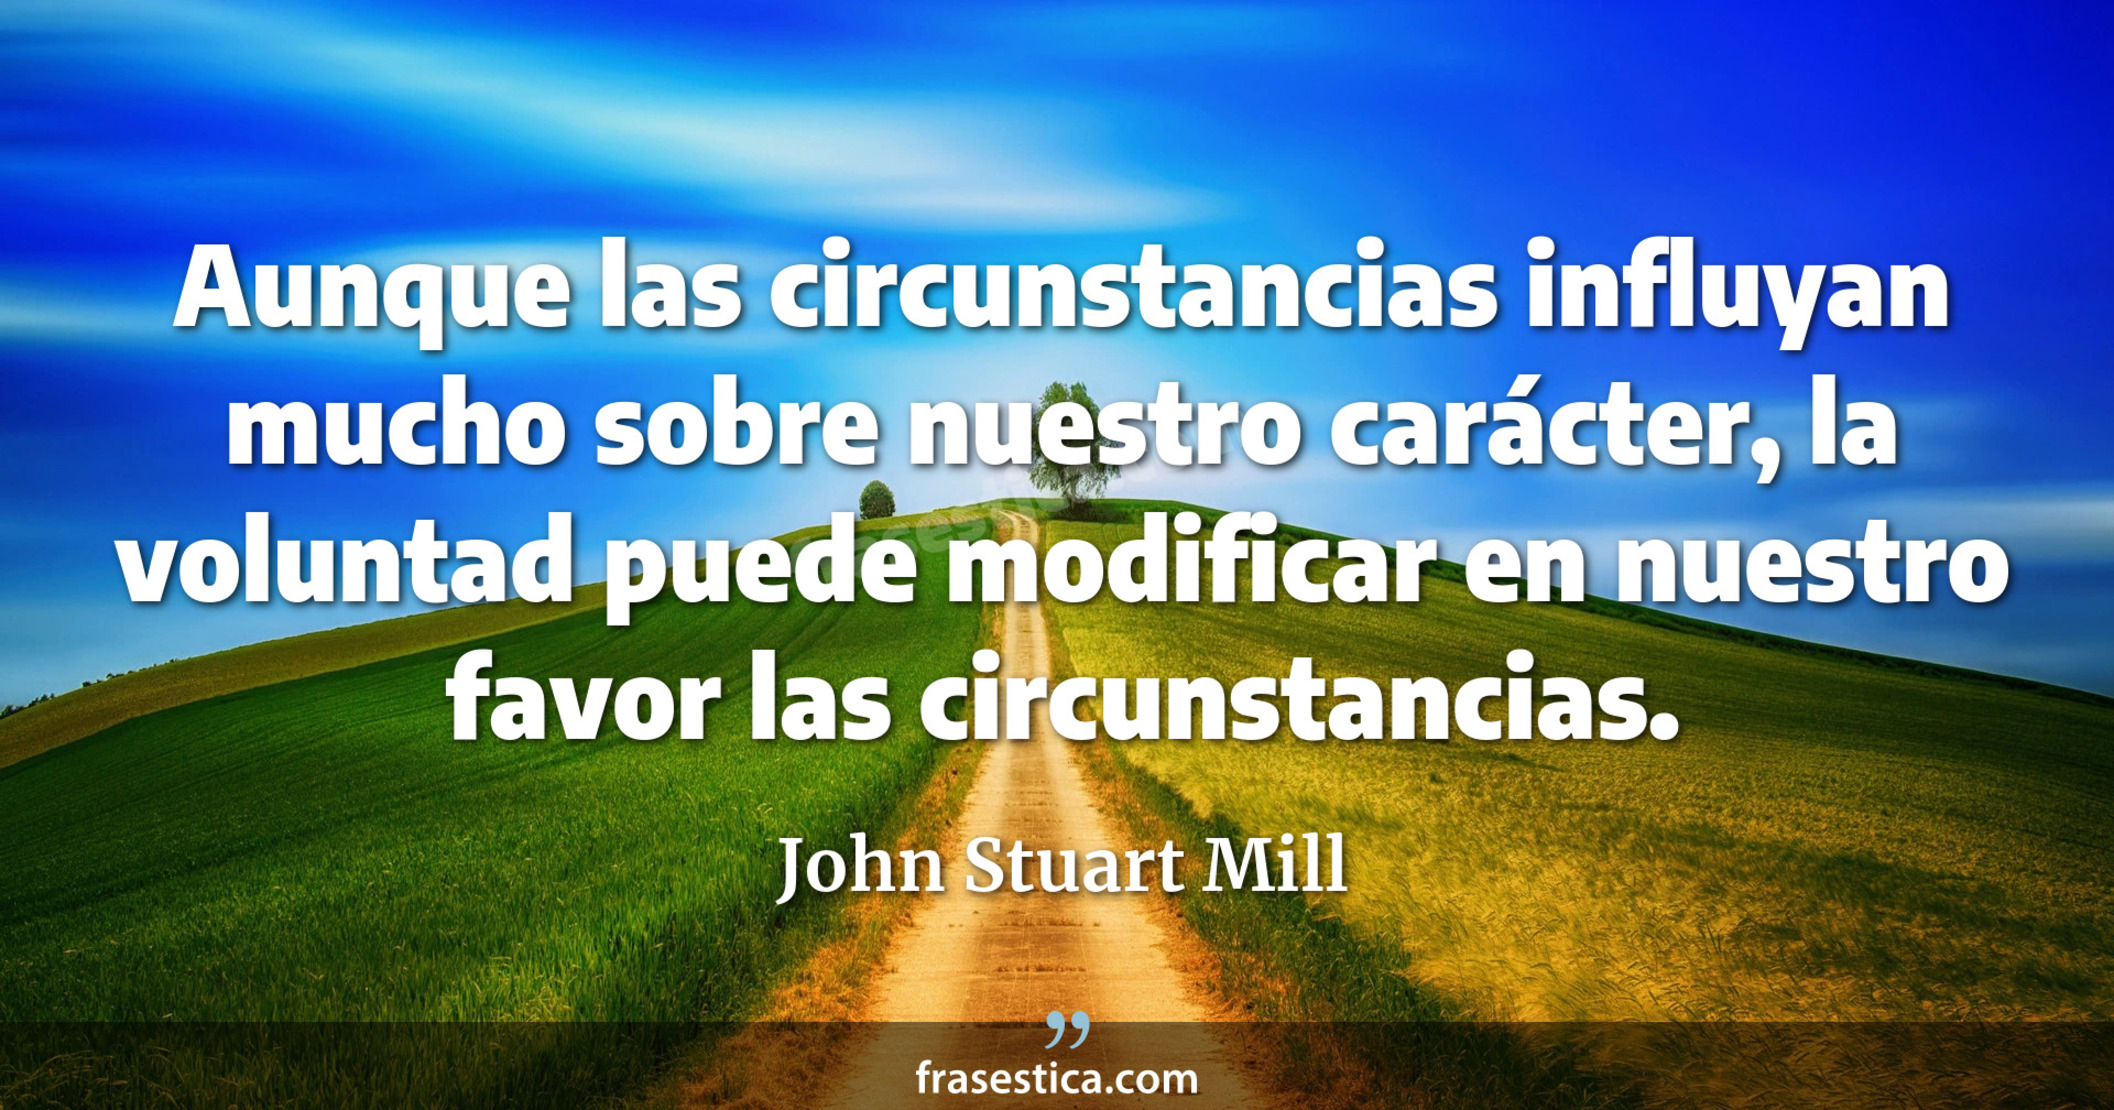 Aunque las circunstancias influyan mucho sobre nuestro carácter, la voluntad puede modificar en nuestro favor las circunstancias. - John Stuart Mill